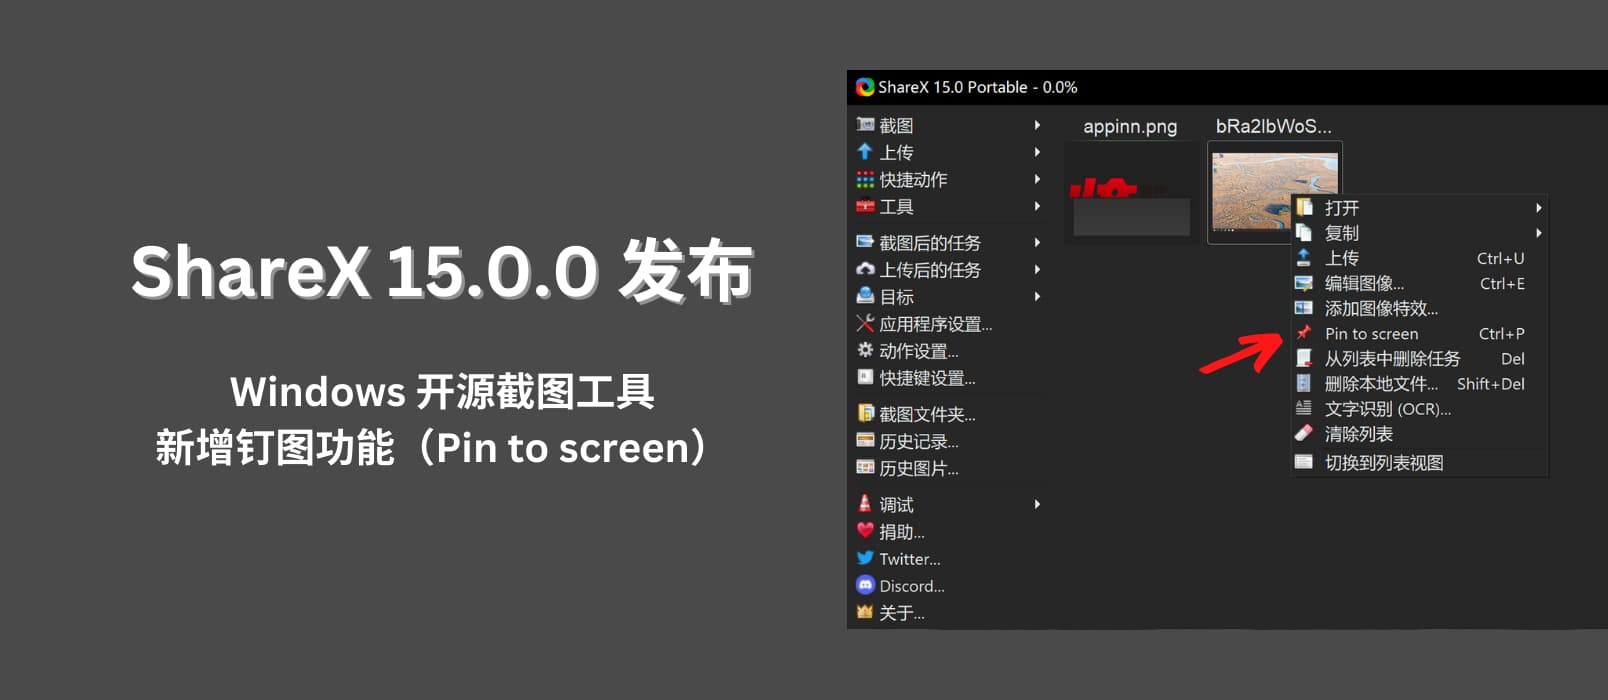 ShareX 15.0.0 发布：Windows 开源截图工具，新增钉图功能（Pin to screen）